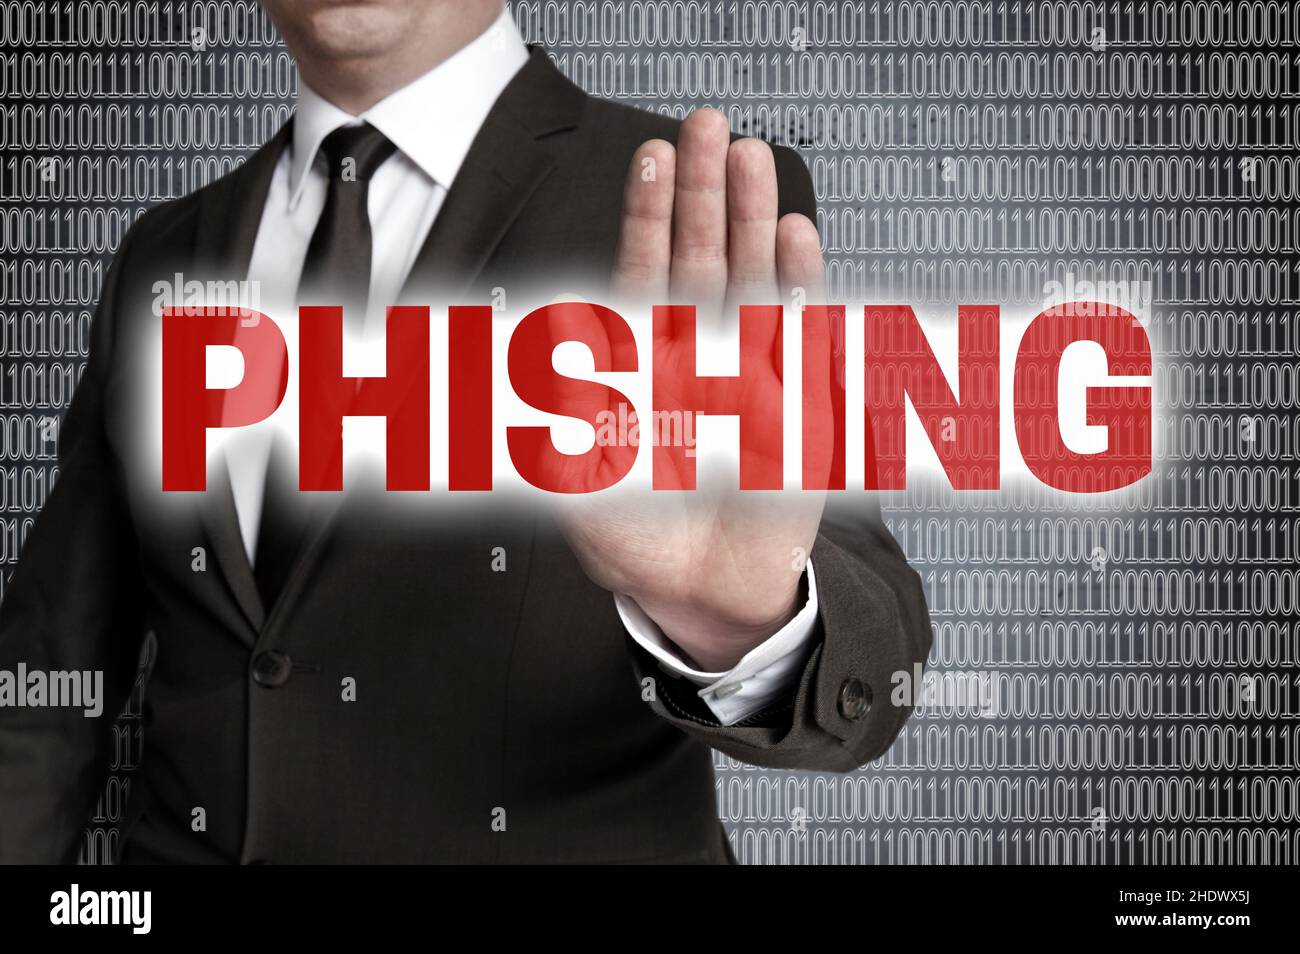 datenschutzrichtlinie, Phishing, Datenschutzrichtlinien Stockfoto